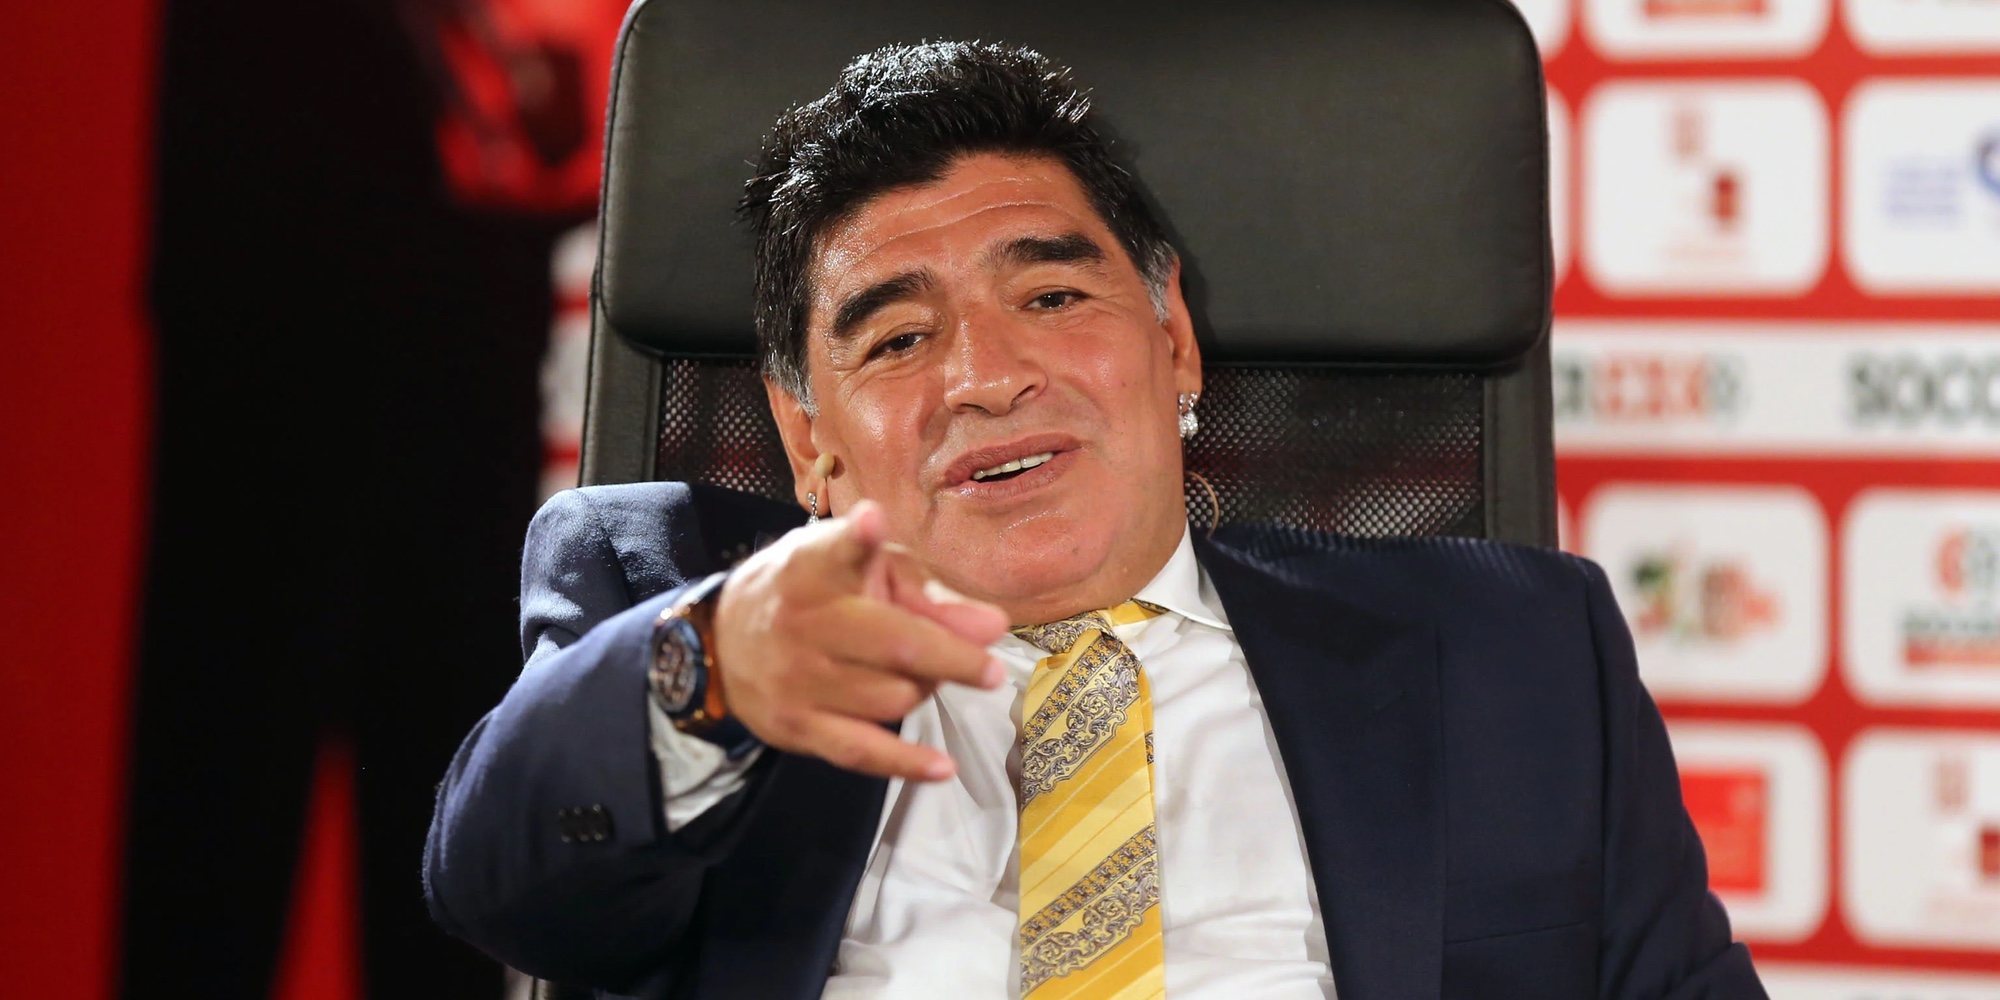 Un psicólogo y dos enfermeros, también investigados por la muerte de Diego Armando Maradona